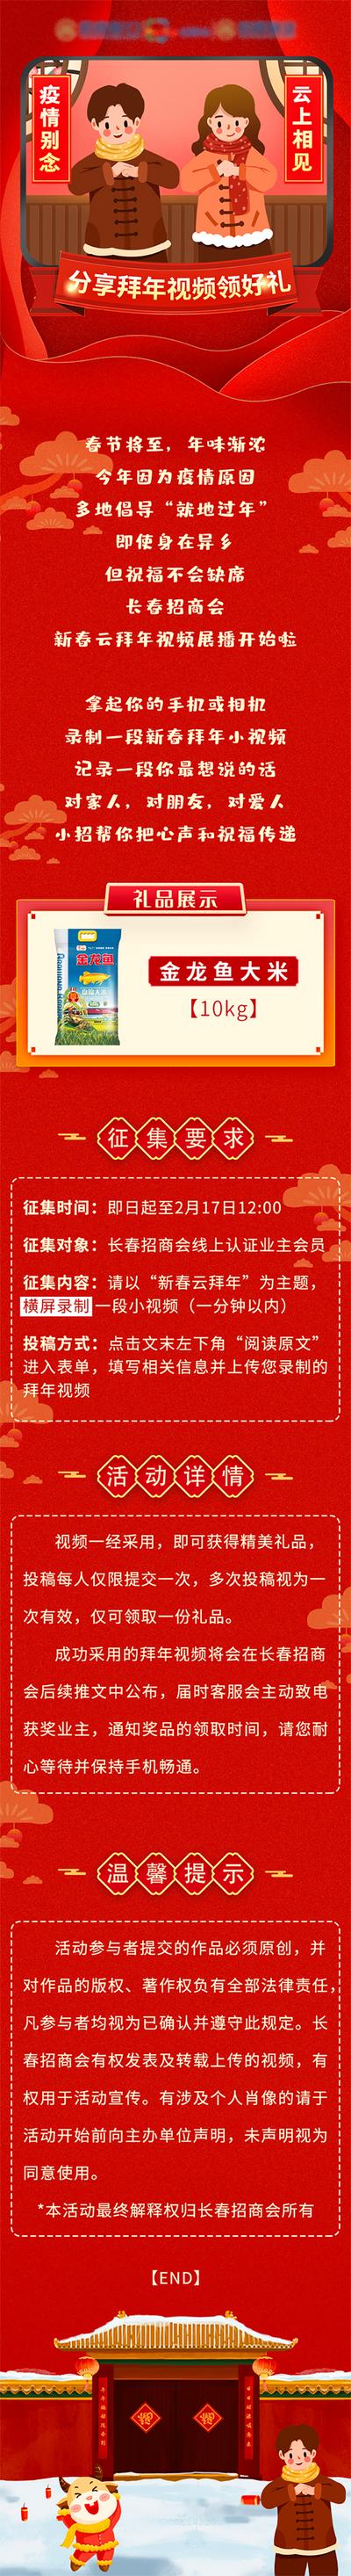 南门网 专题设计 中国传统节日 新年 疫情 拜年 活动 云拜年